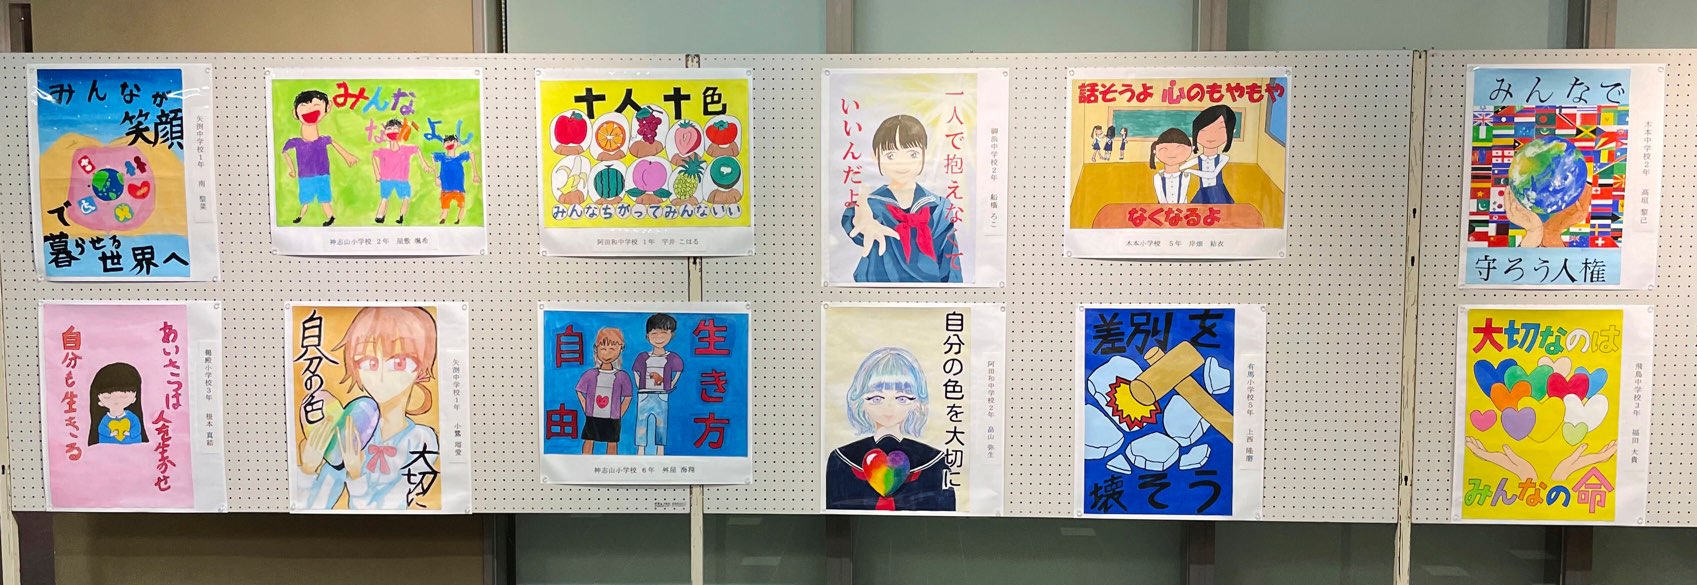 みんなでまもろう 熊野市文化交流センター 人権ポスター展始まる